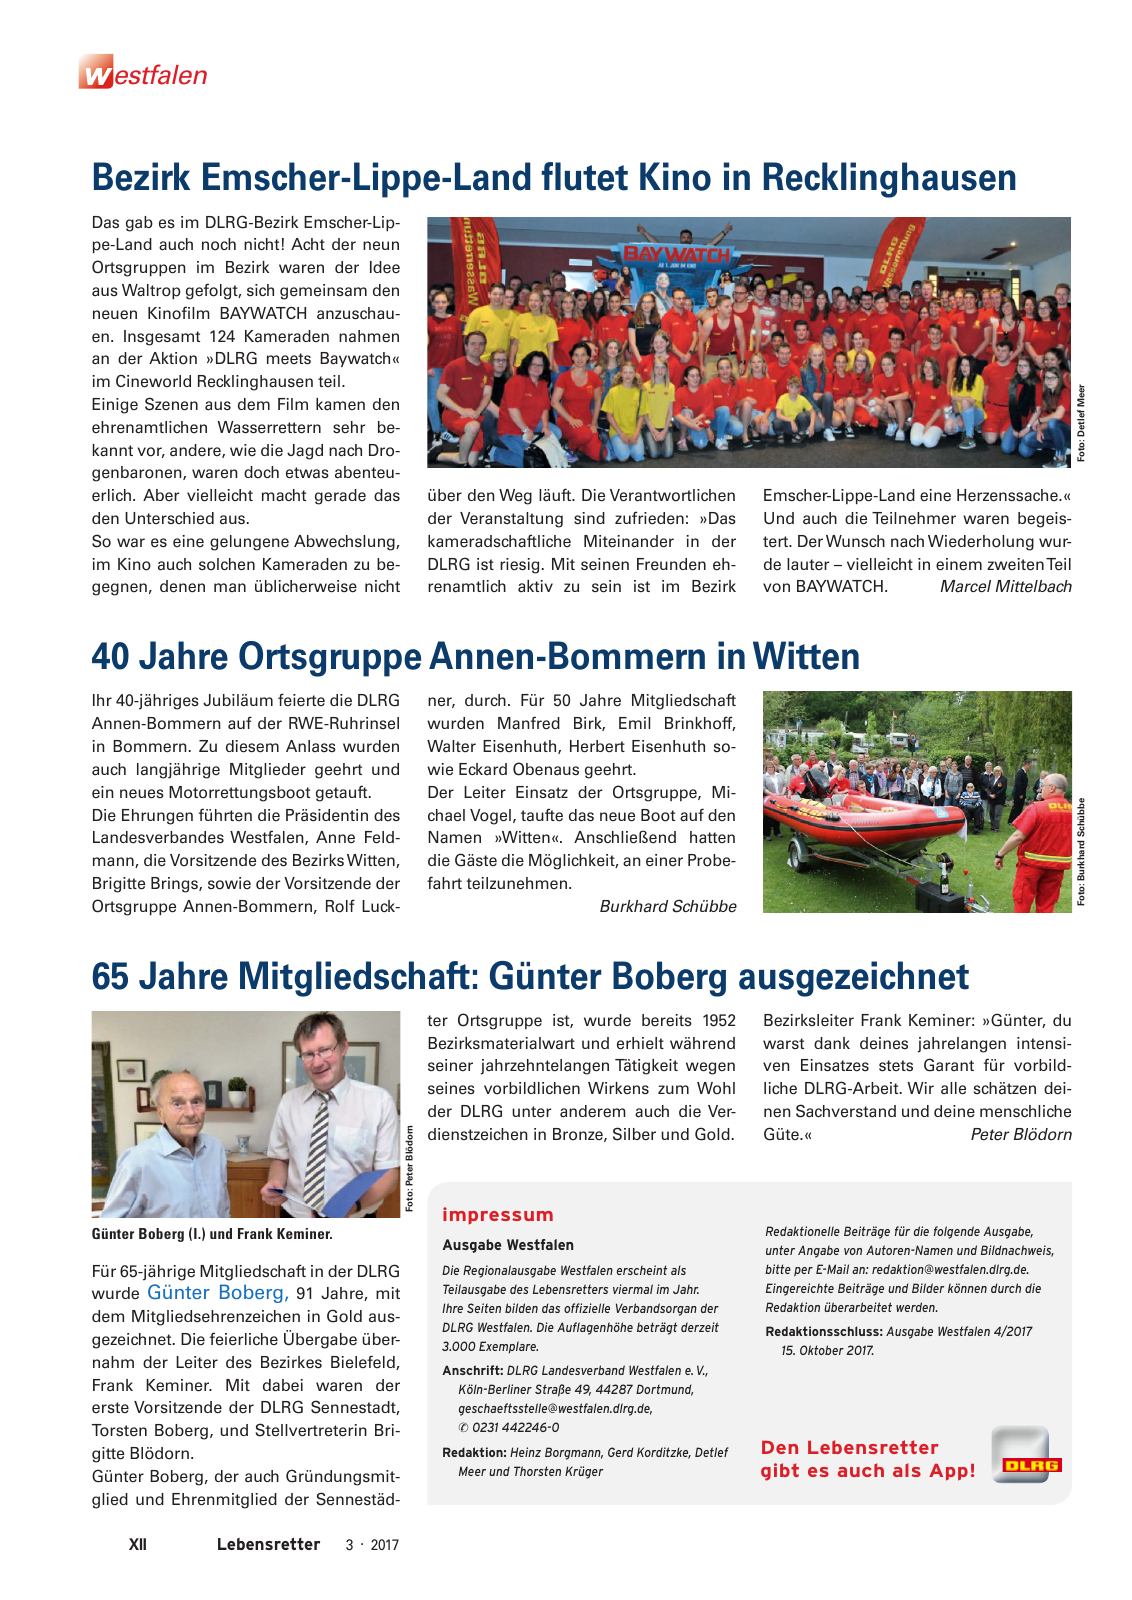 Vorschau Lebensretter 3/2017 - Regionalausgabe Westfalen Seite 14